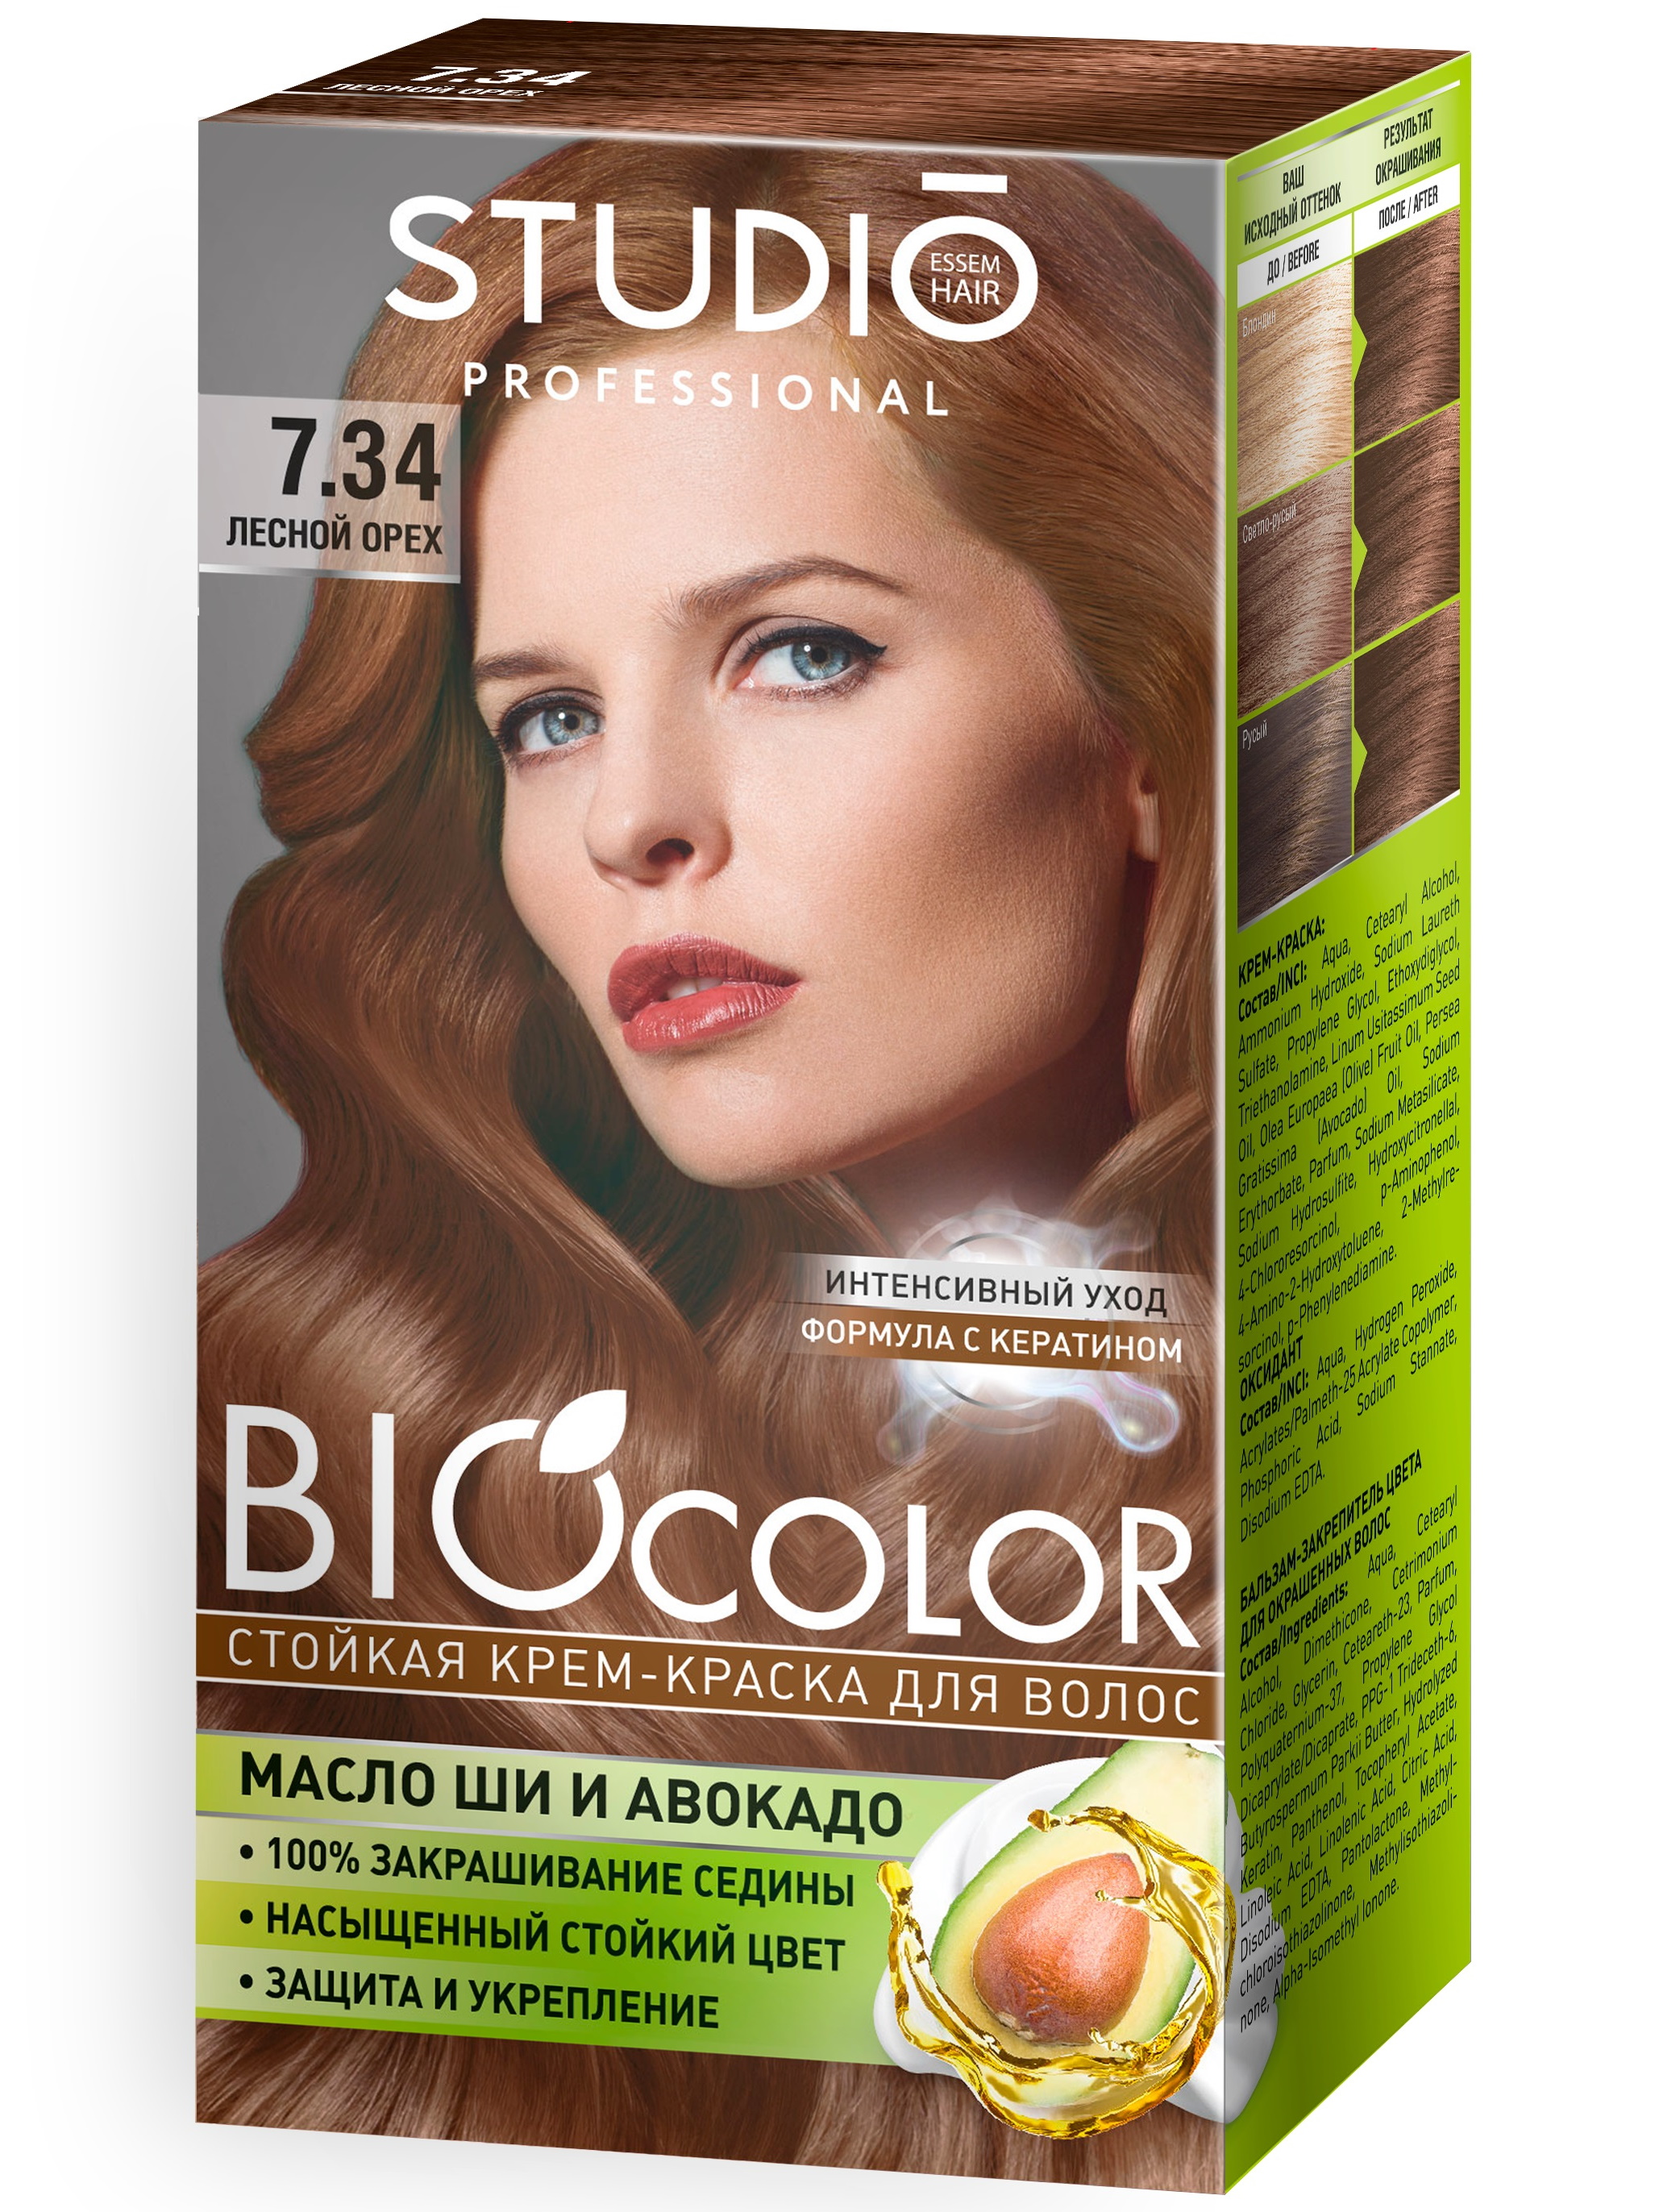 Комплект STUDIO PROFESSIONAL,  BIOCOLOR для окрашивания волос  7.34 лесной орех 2*50+15 мл